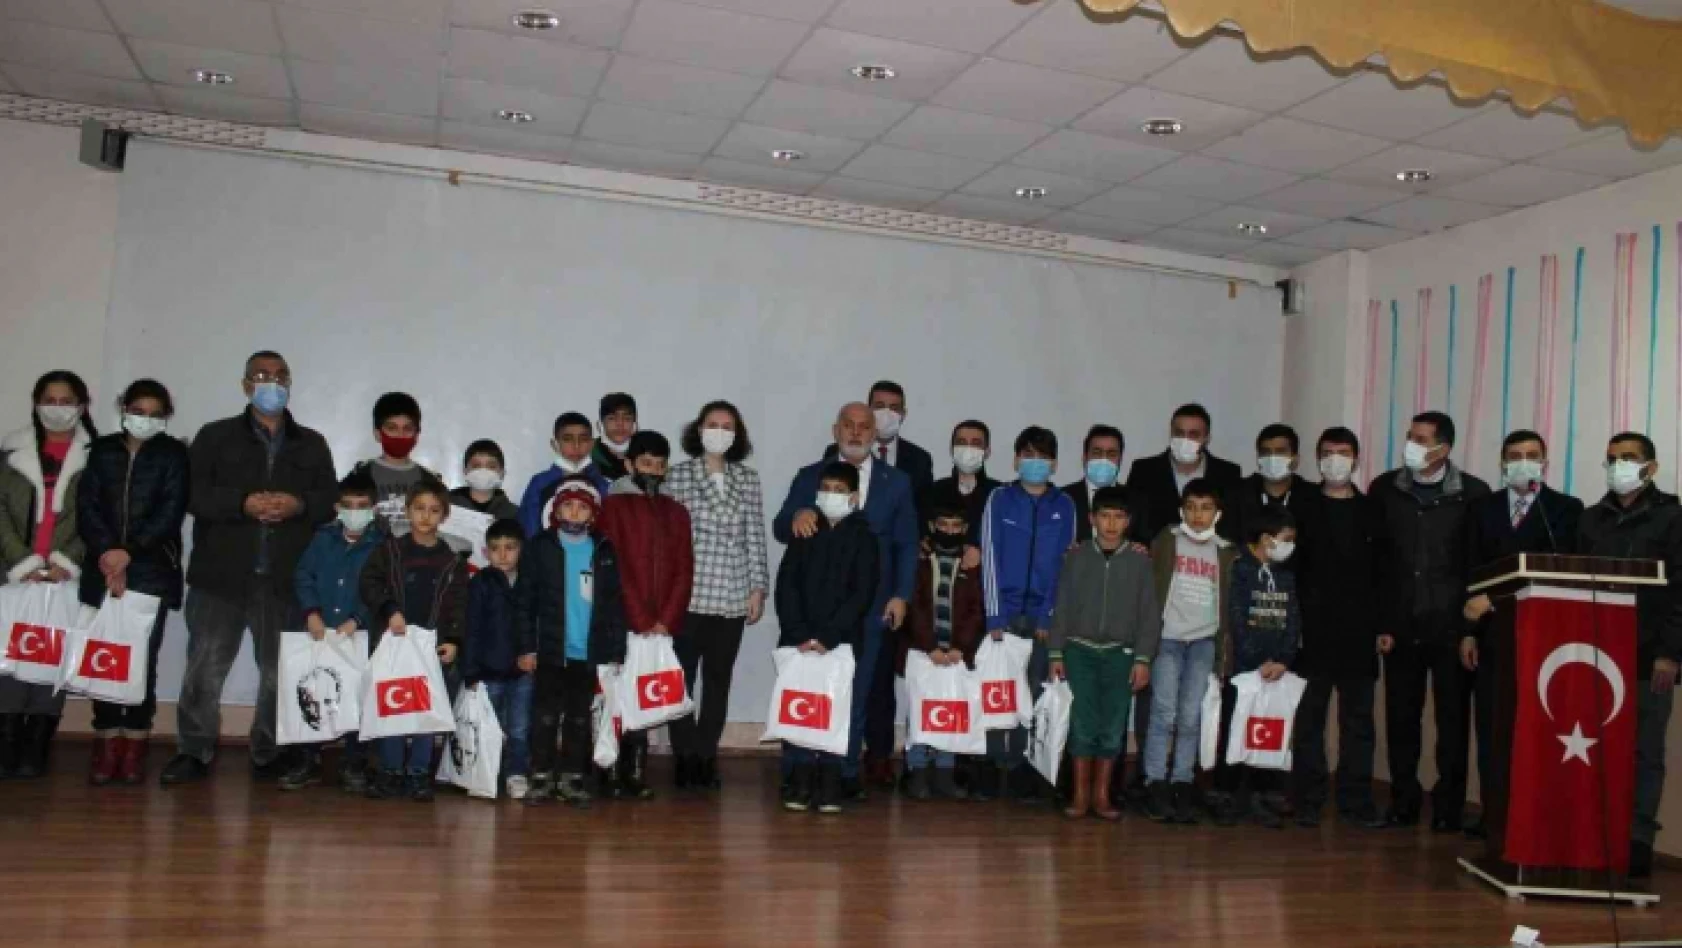 'Haydi Çocuklar Camiye' Projesinin ödül töreni düzenlendi